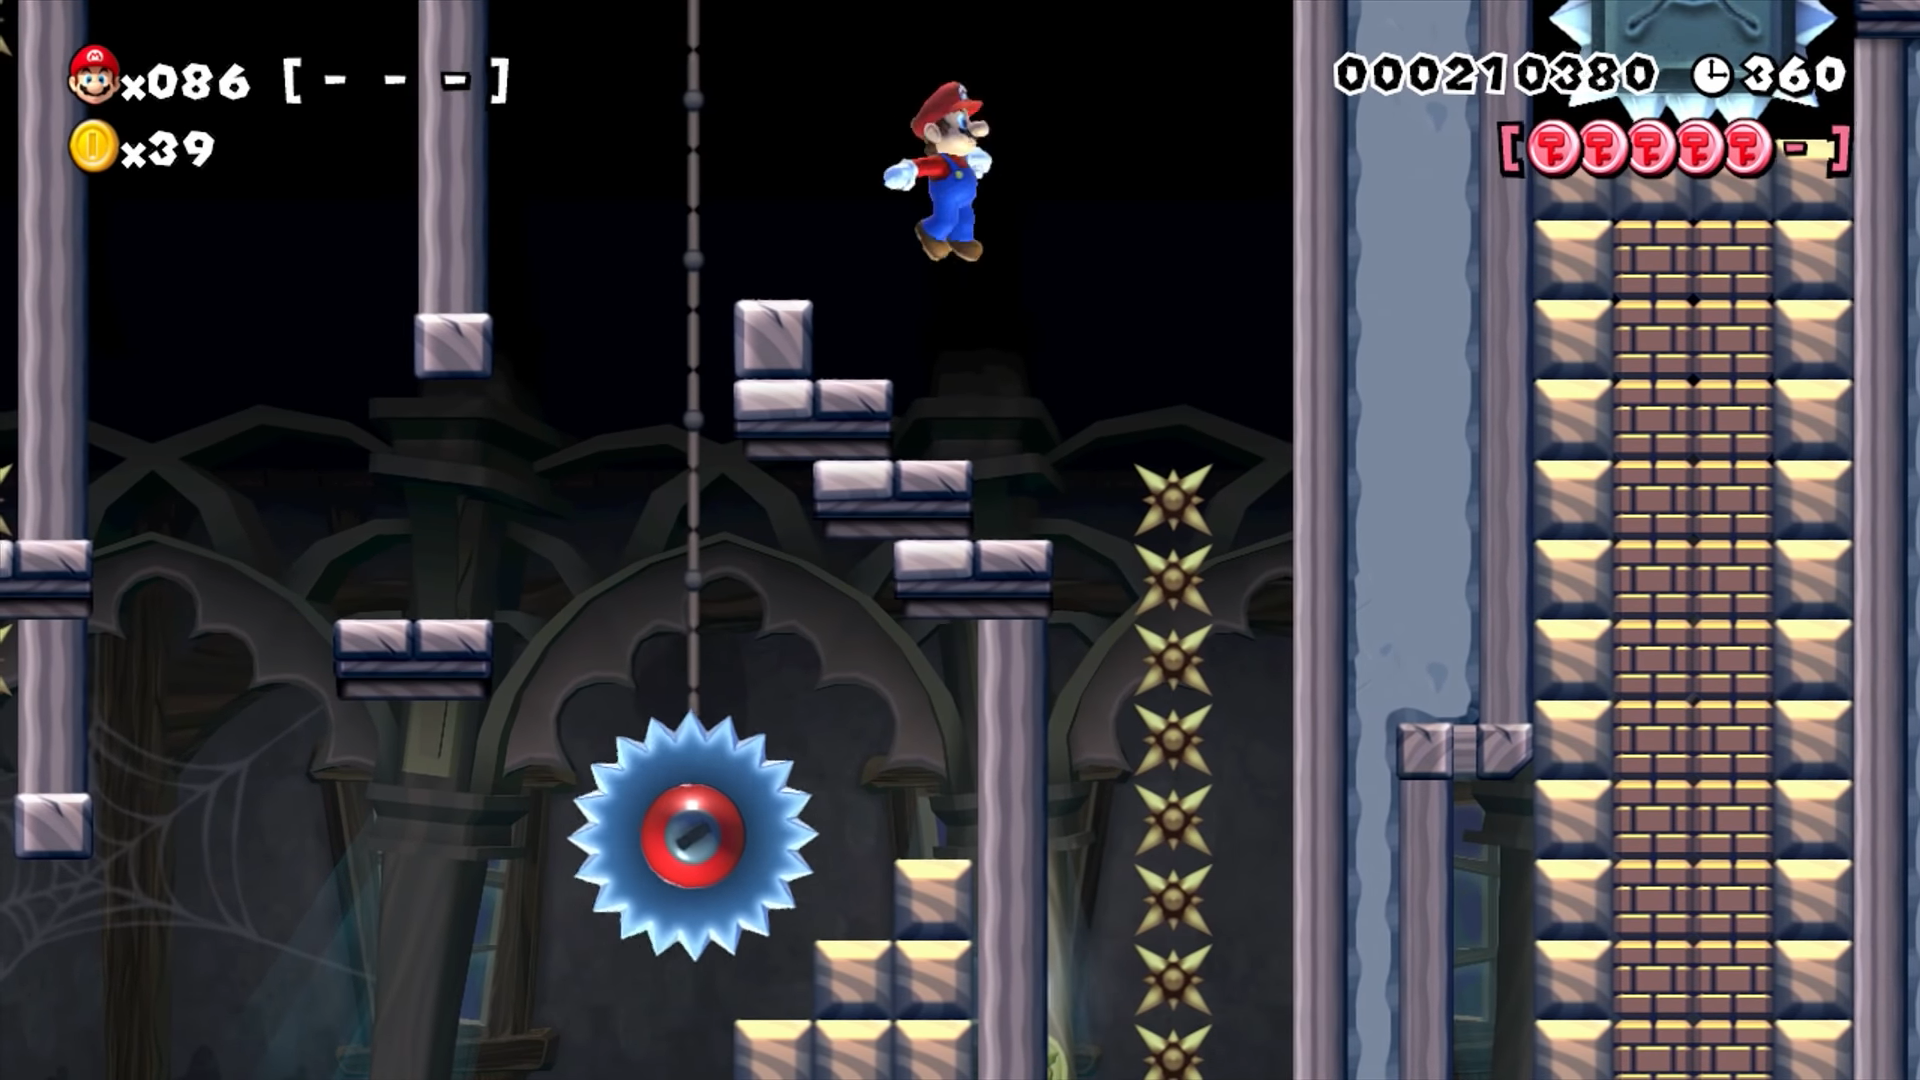 Super Mario Maker je također izdan za Wii U, a posebnost je u tome što igrači mogu sami stvarati svoje nivoe. Igra je time u teoriji bez kraja, budući da se uvijek mogu pronaći novi nivoi za igranje.